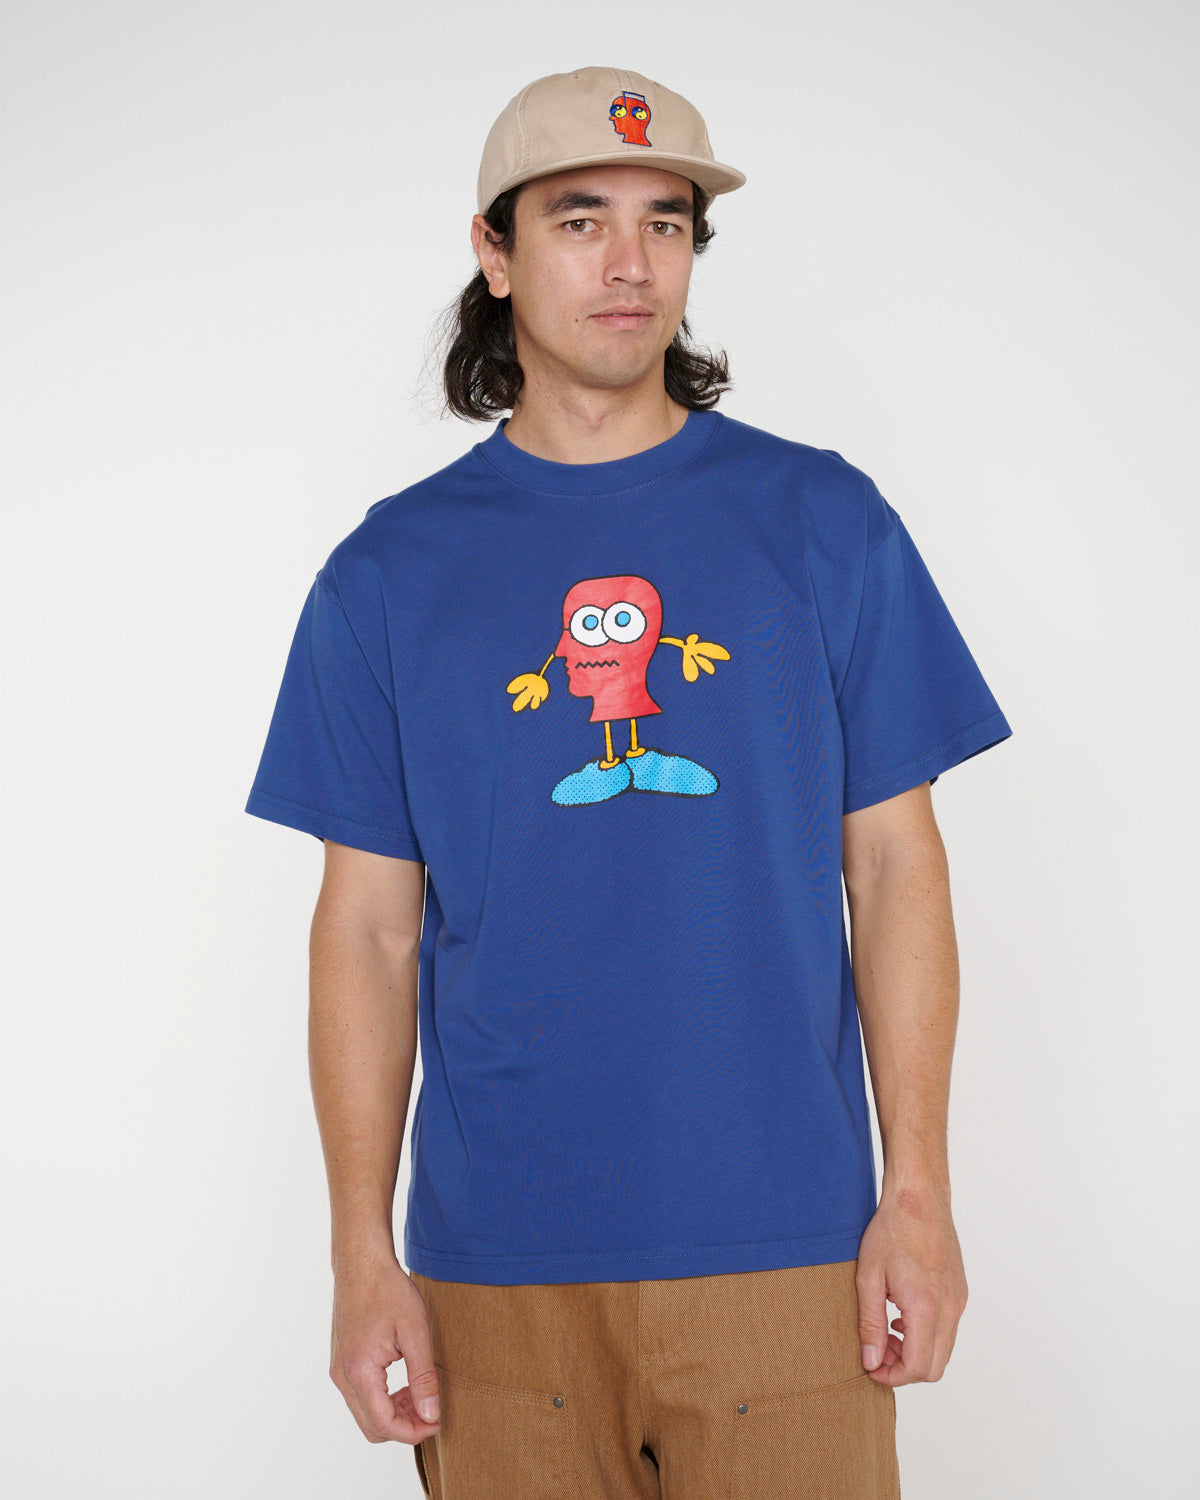 Brainohead T-shirt - Slate